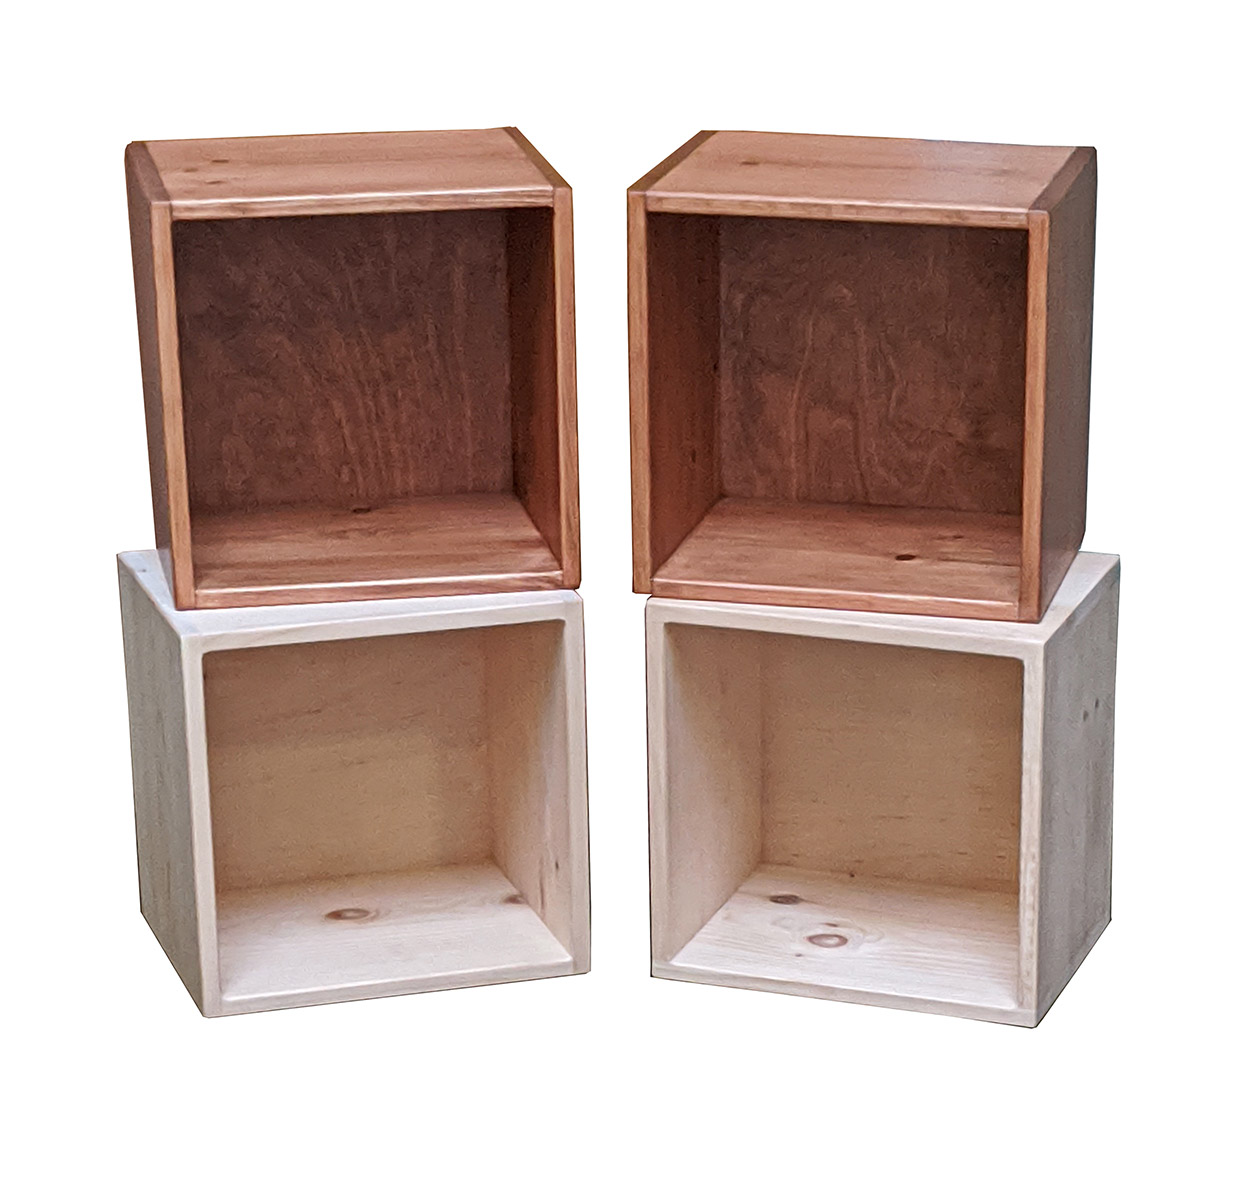 Pine Alder Furniture Fenton, Unfinished Alder Wood Bookcases